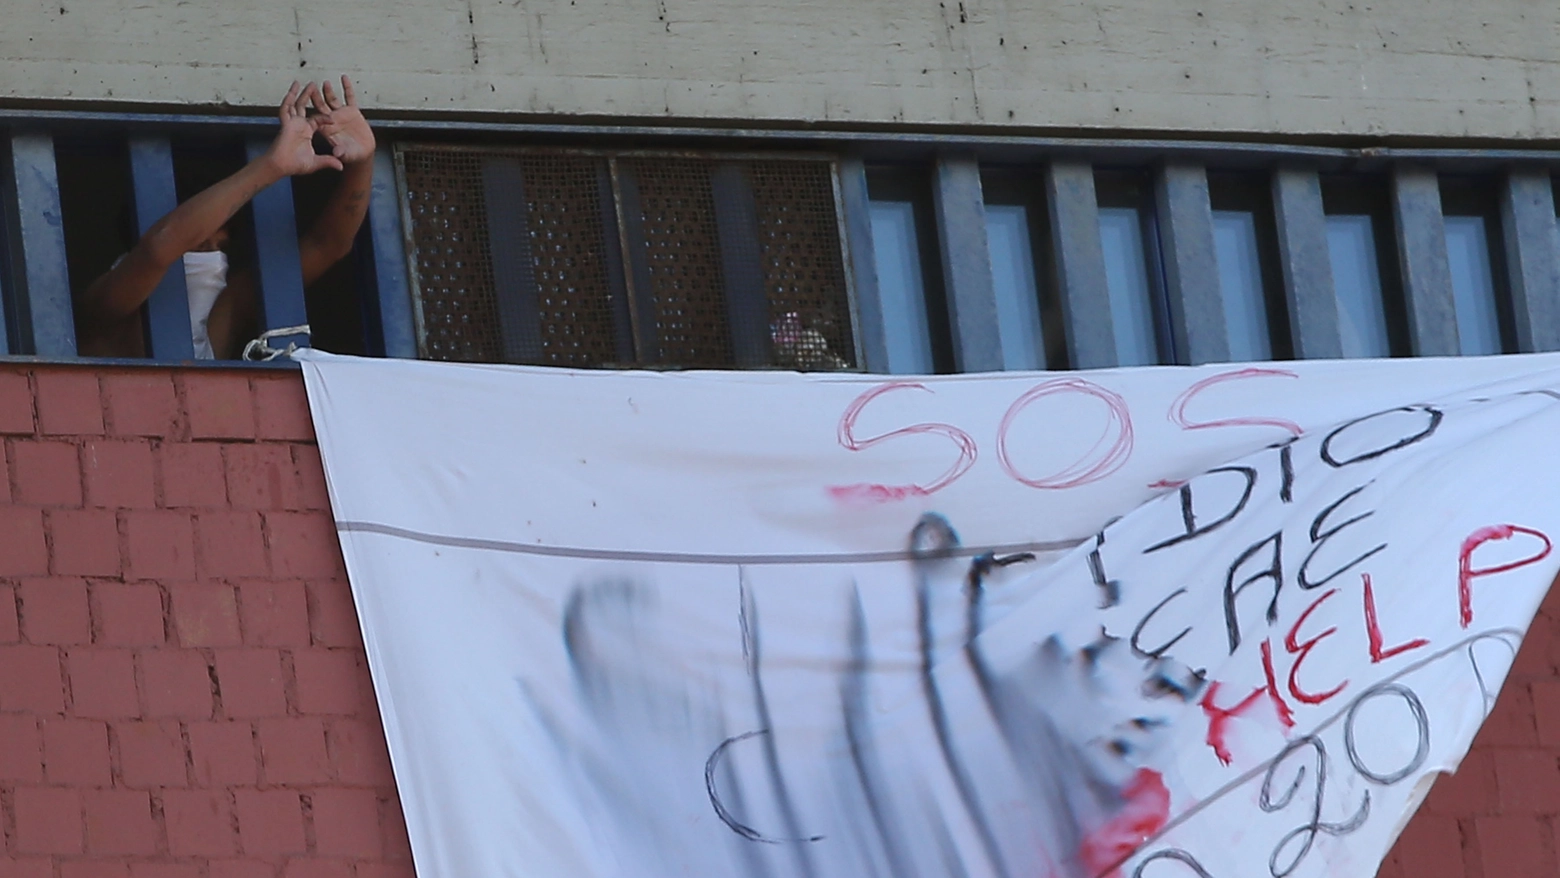 La protesta dei detenuti nel carcere di Sollicciano (New Press Photo)